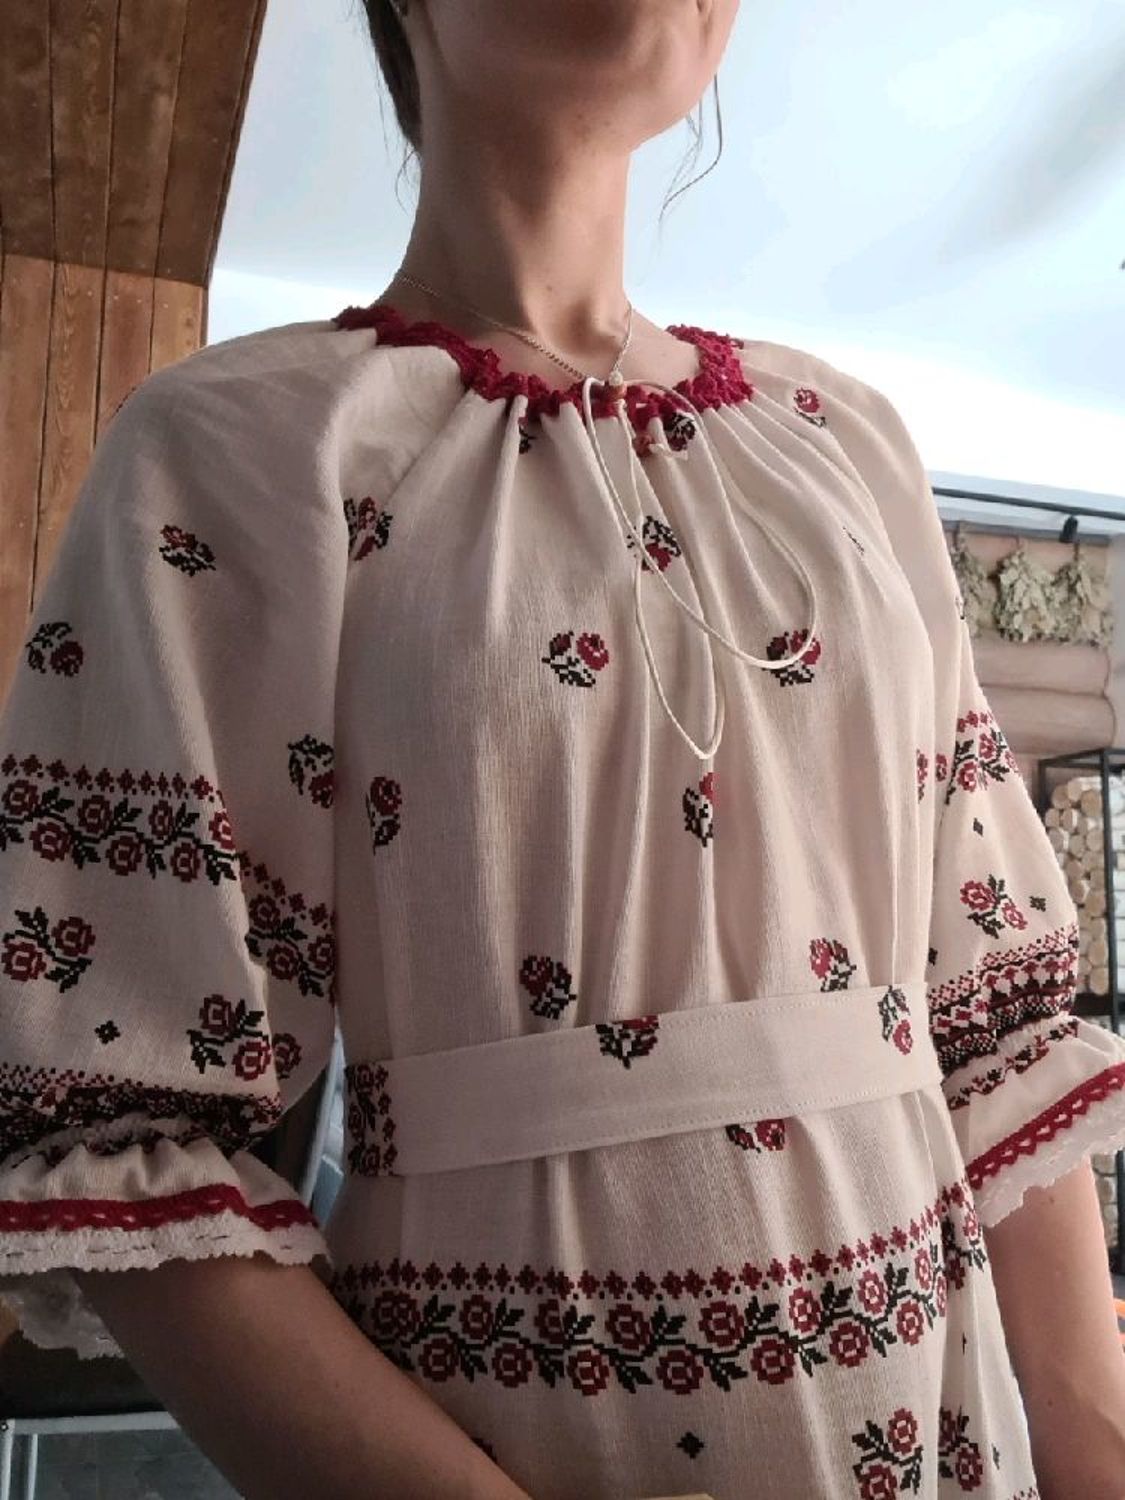 Photo №1 к отзыву покупателя Valeriya Mosina о товаре Длинное платье в бохо стиле "Кудесница/светлое"